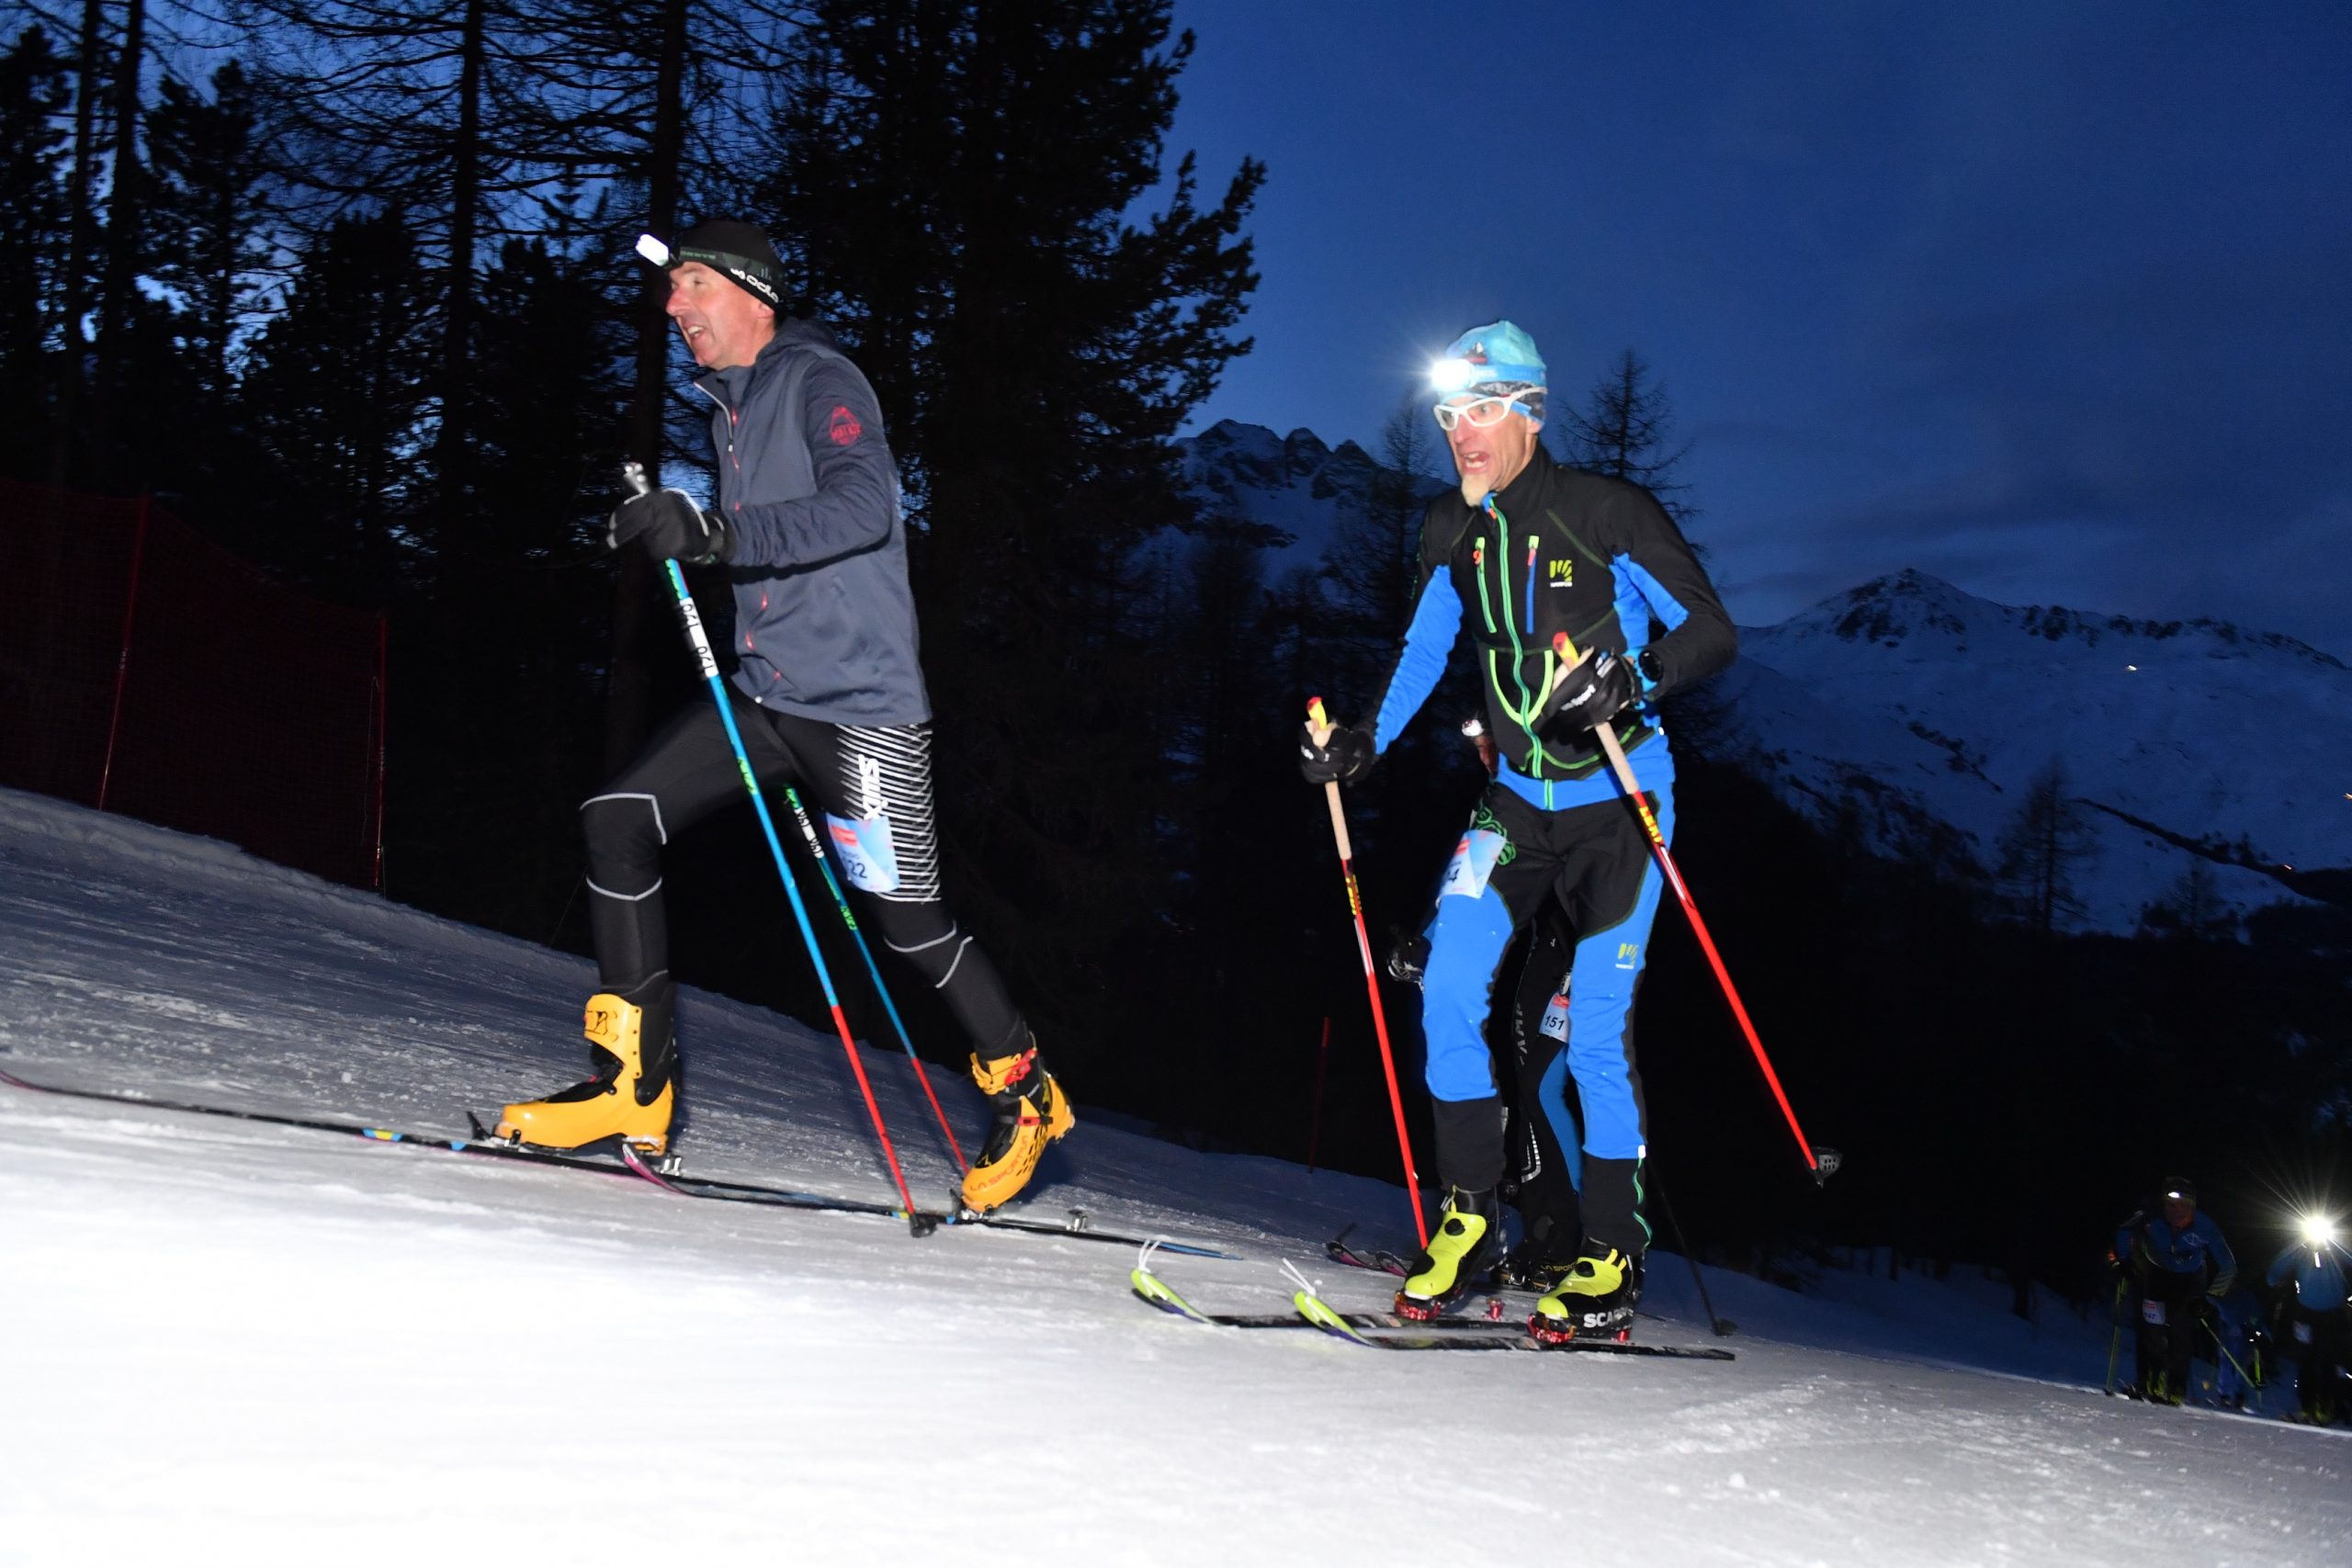 3-Summits - Corvatsch - 2020 Silvaplana
Skitourenwettkampf mit Hhenunterschied: 890 hm, Distanz: 4.5 km
https://www.3-summits.ch